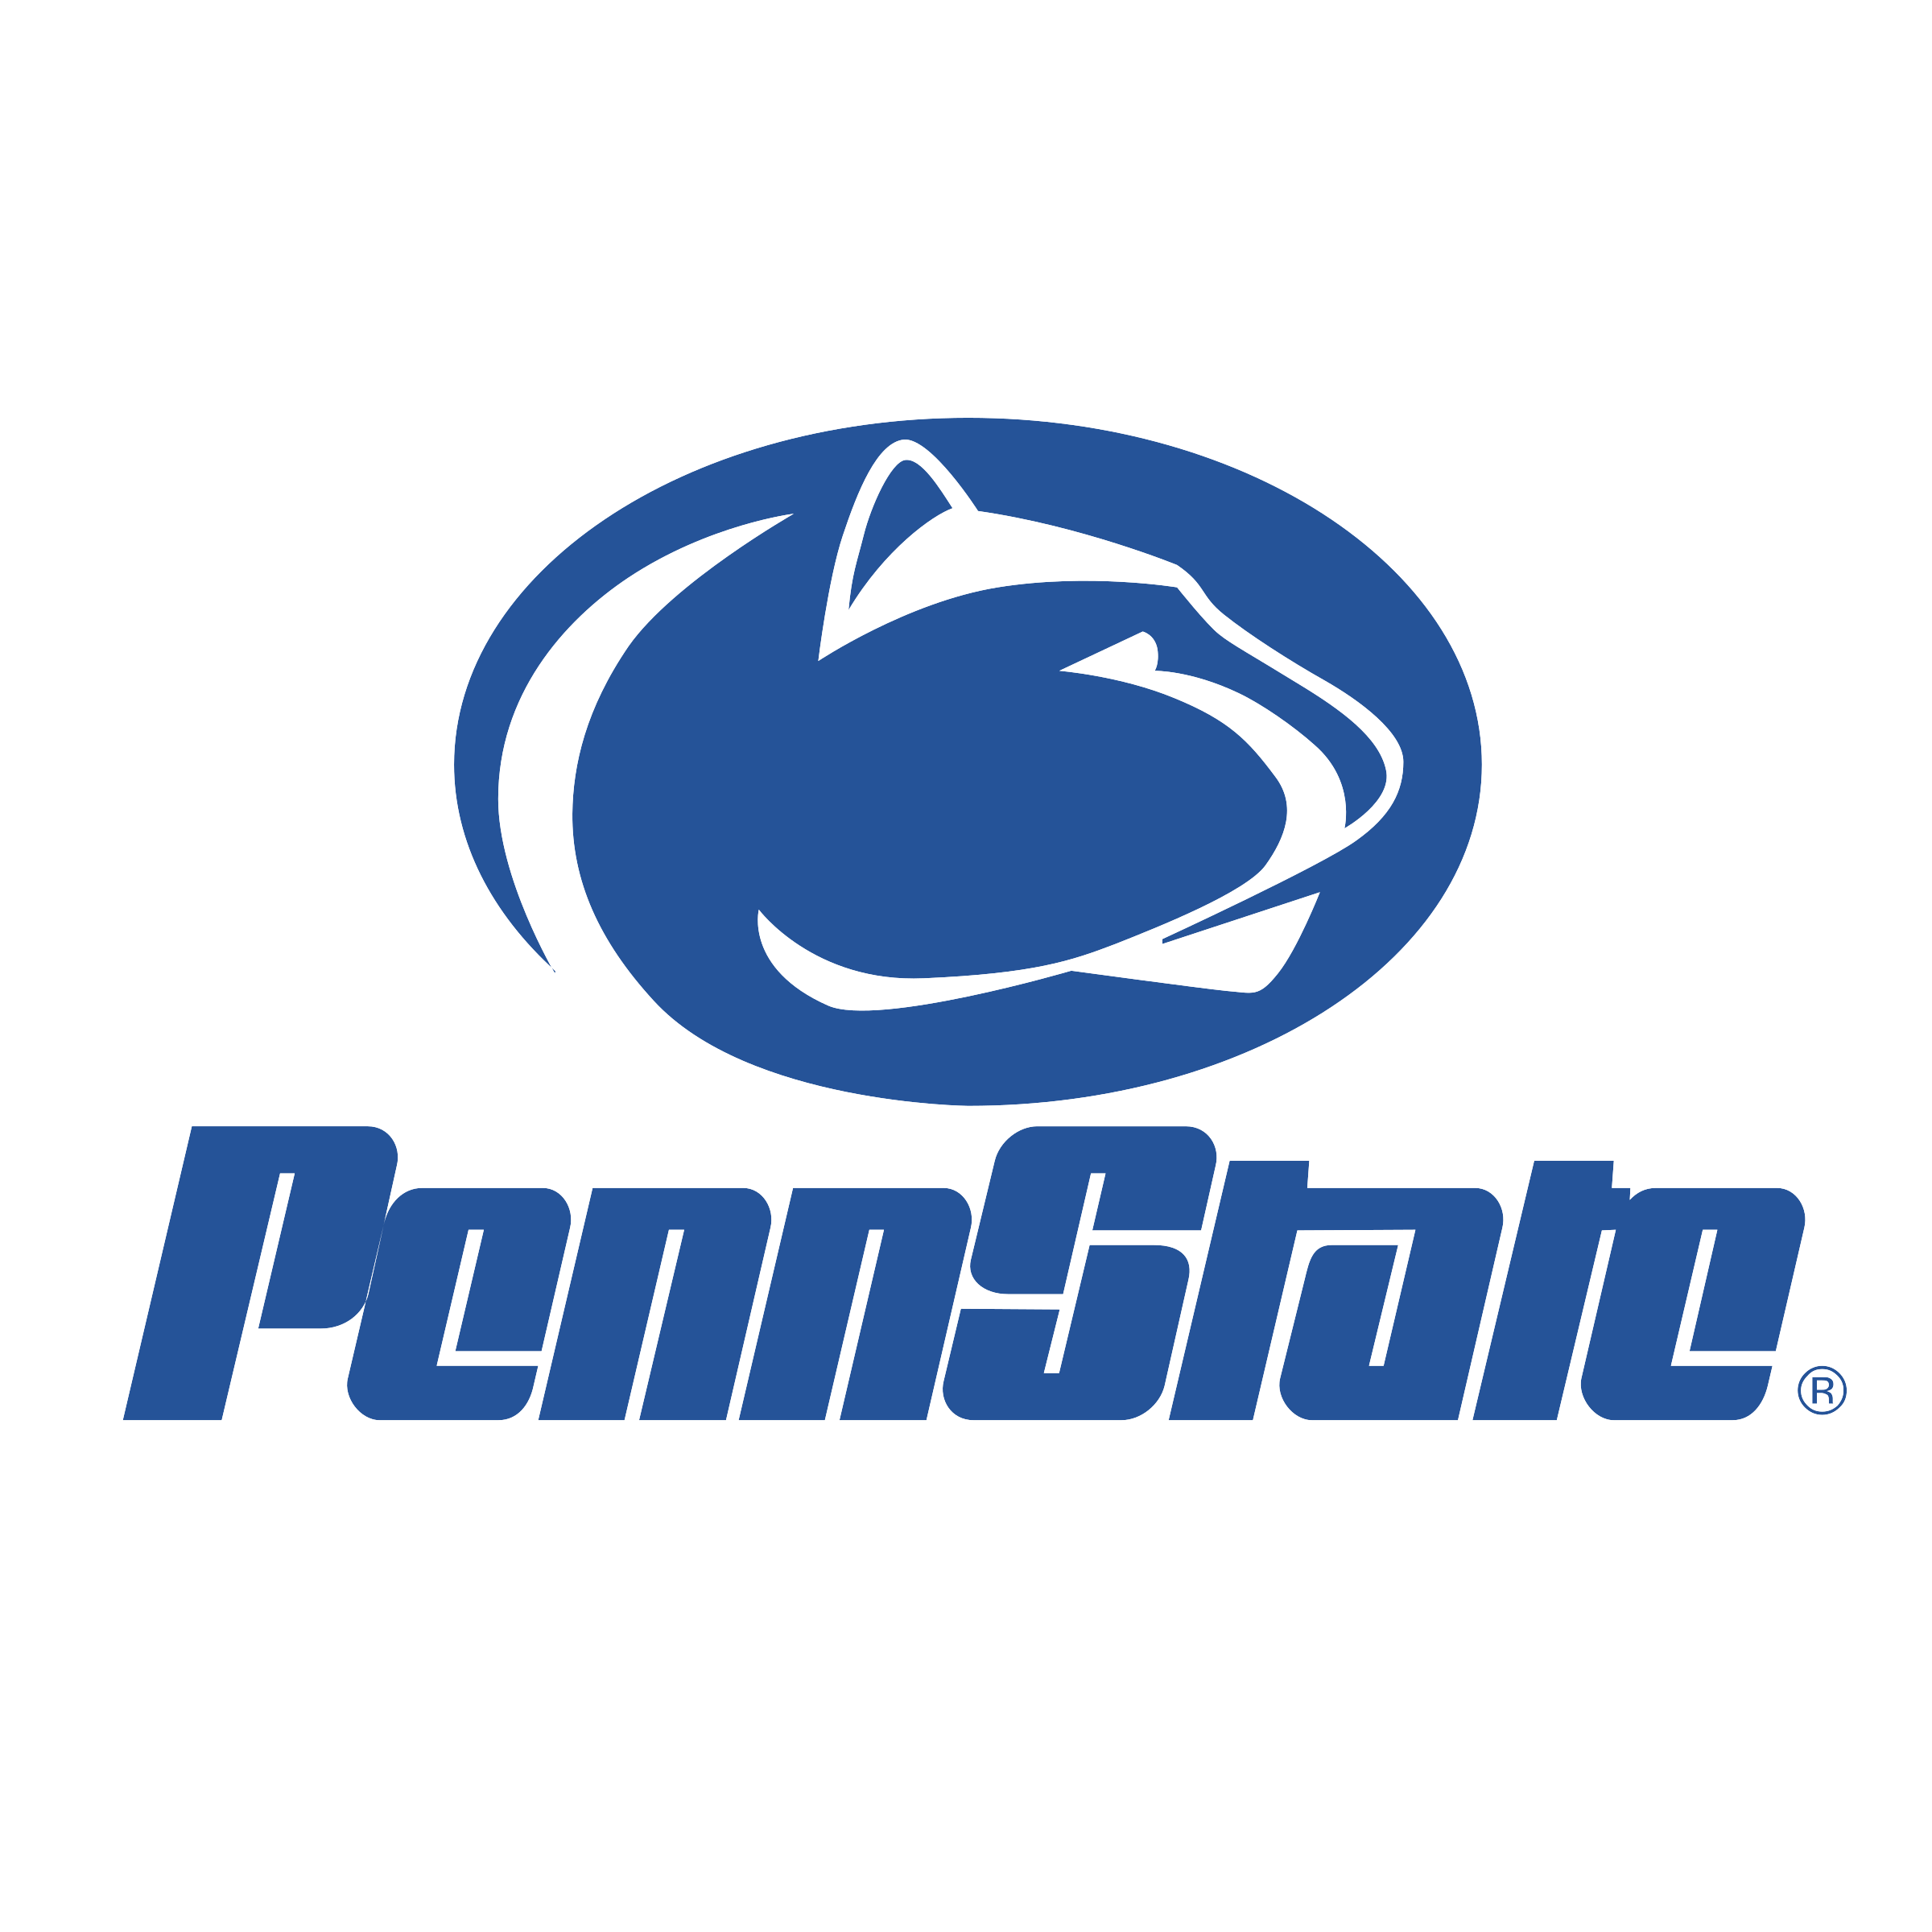 chemistry Penn state logo